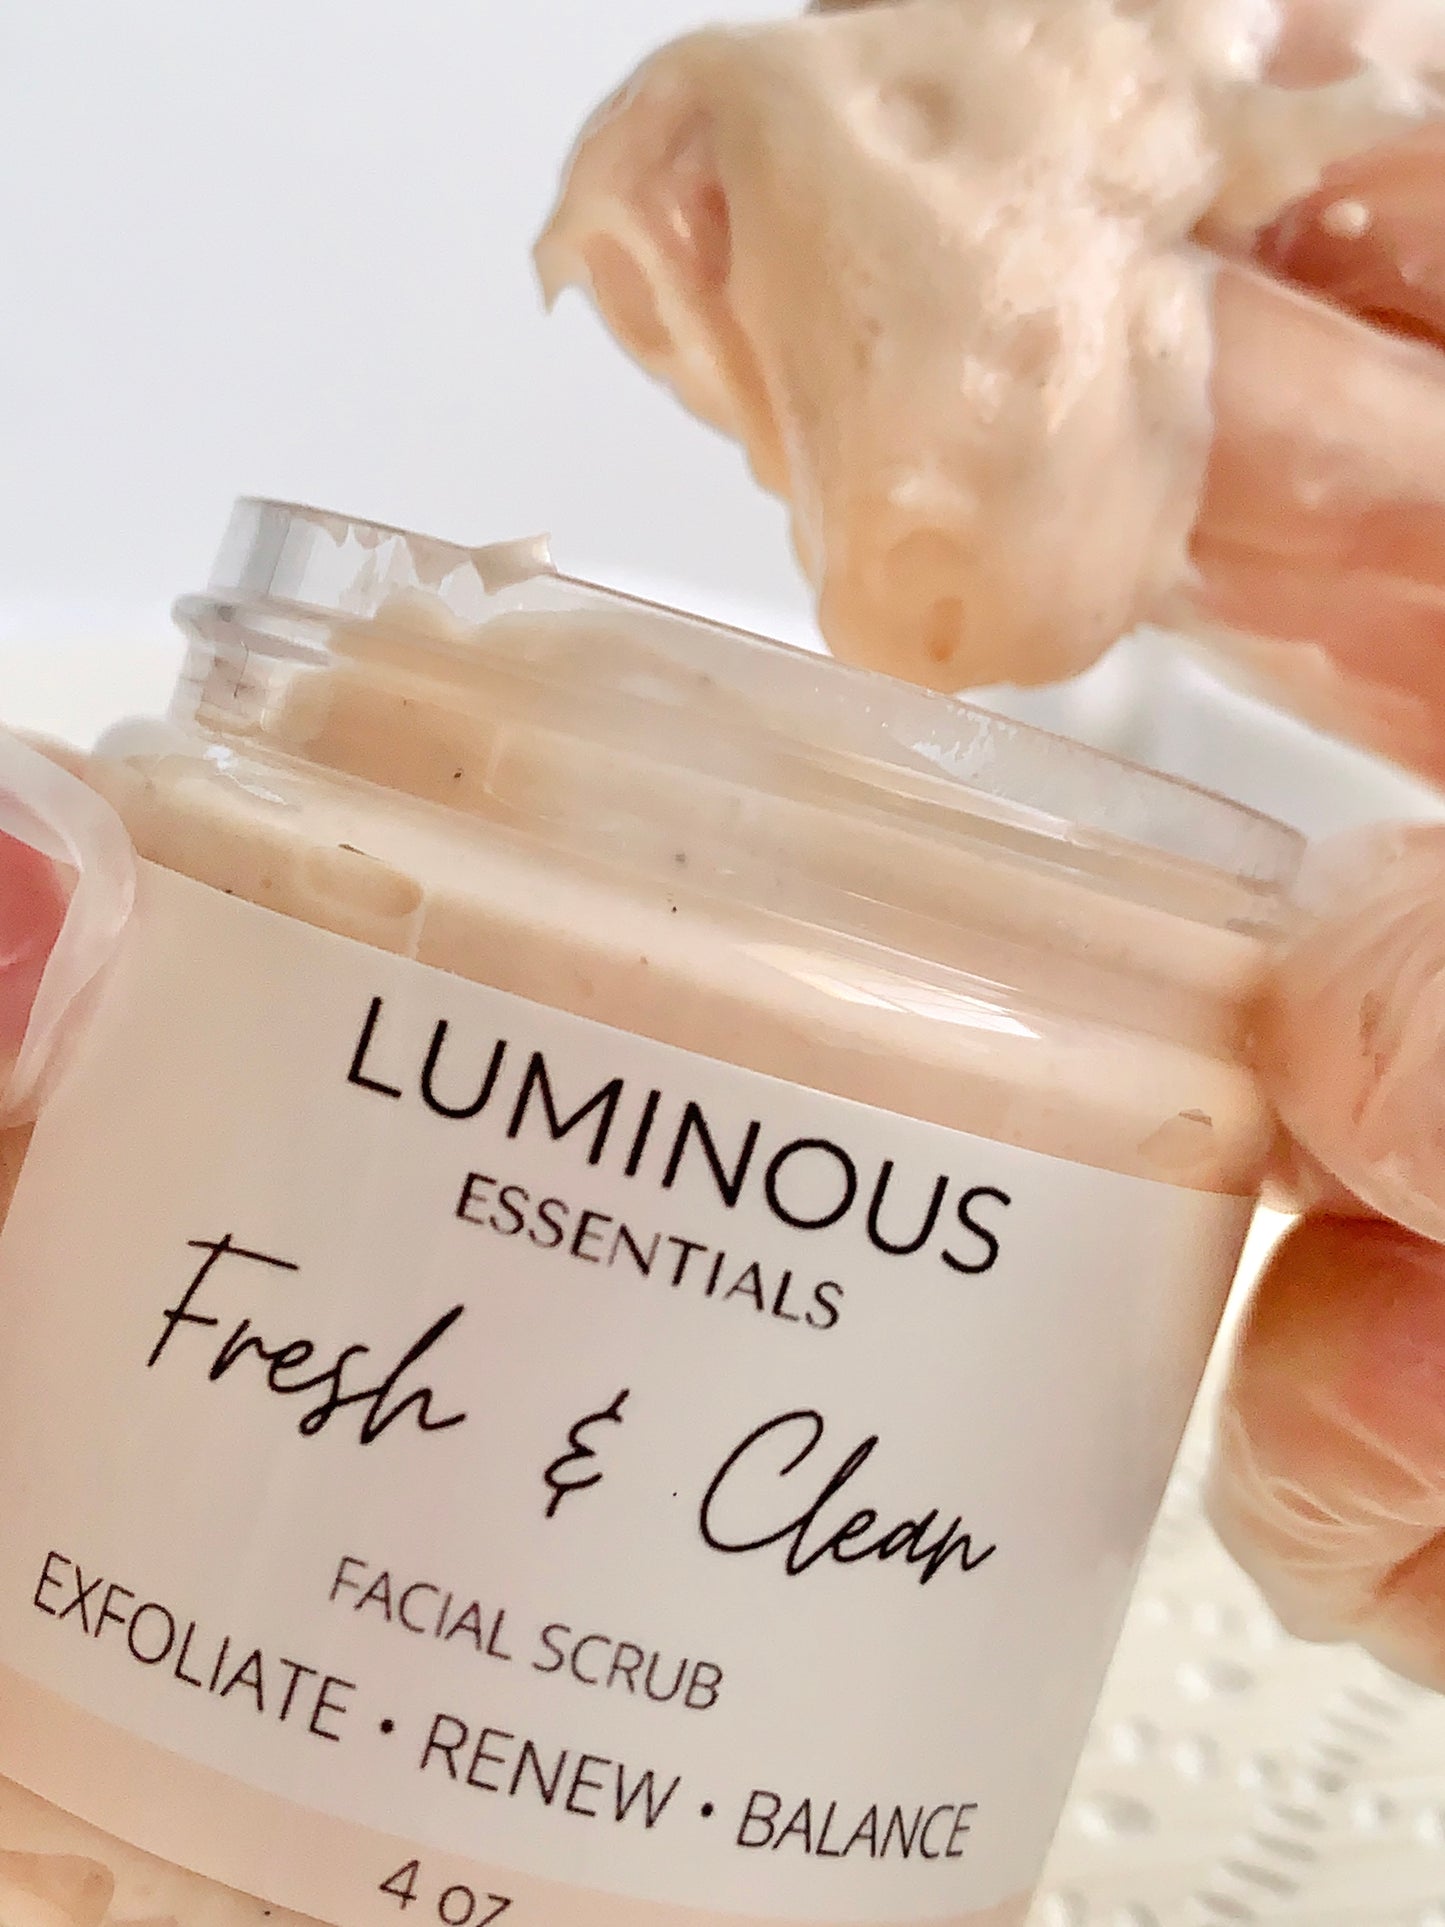 Fresh & Clean Facial Scrub